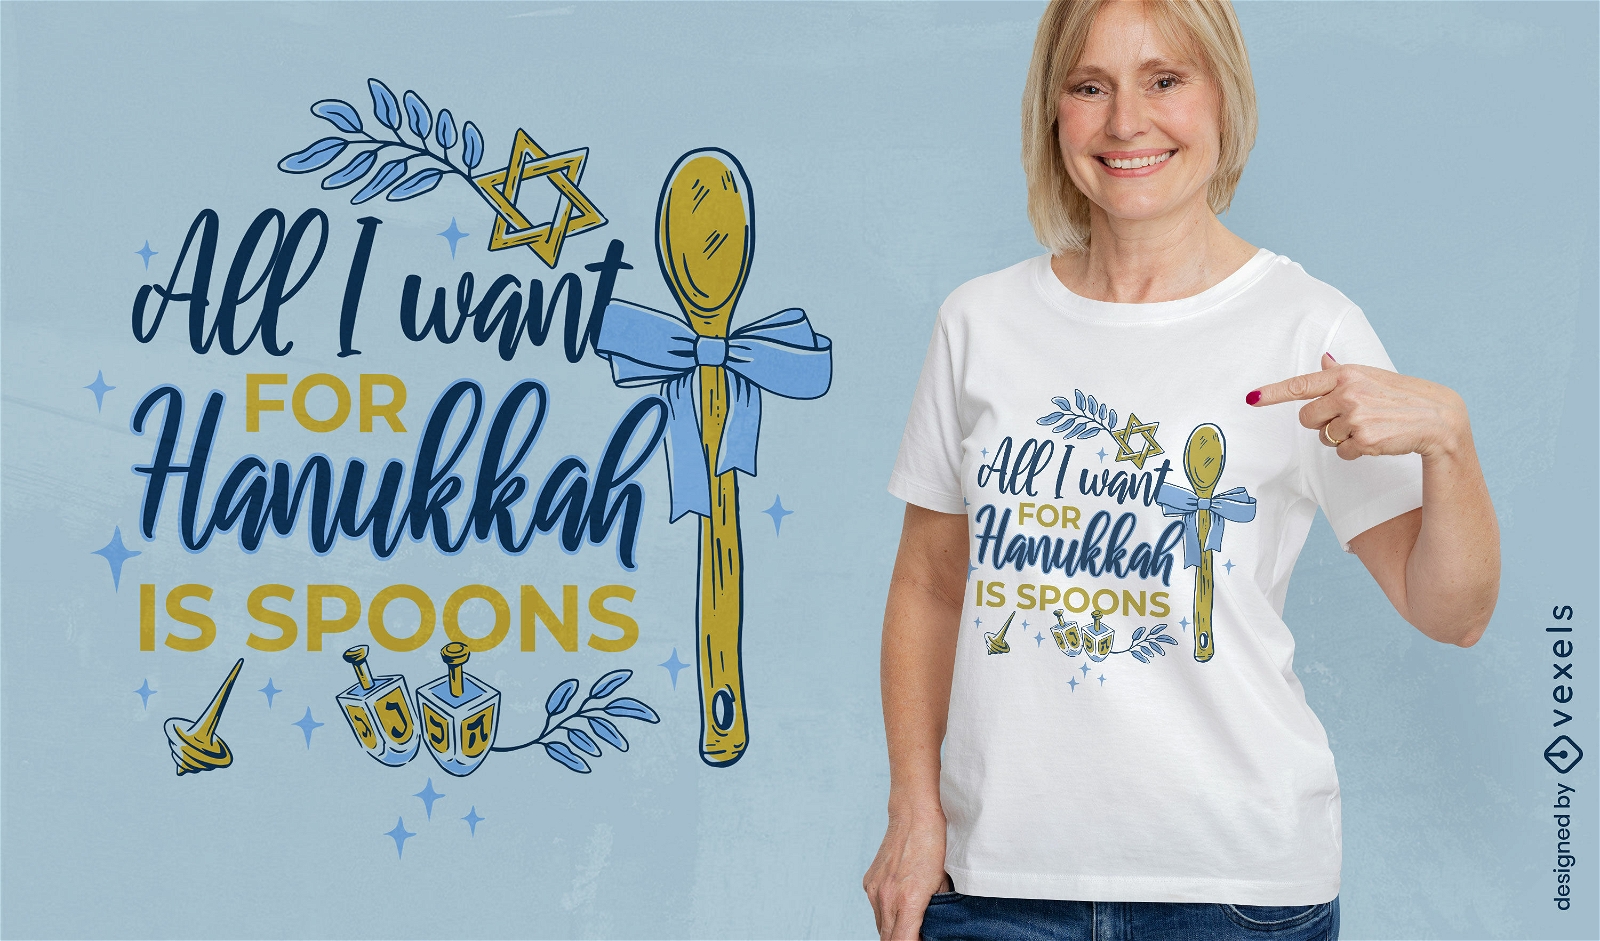 Hanukkah spoons lettering quote t-shirt design